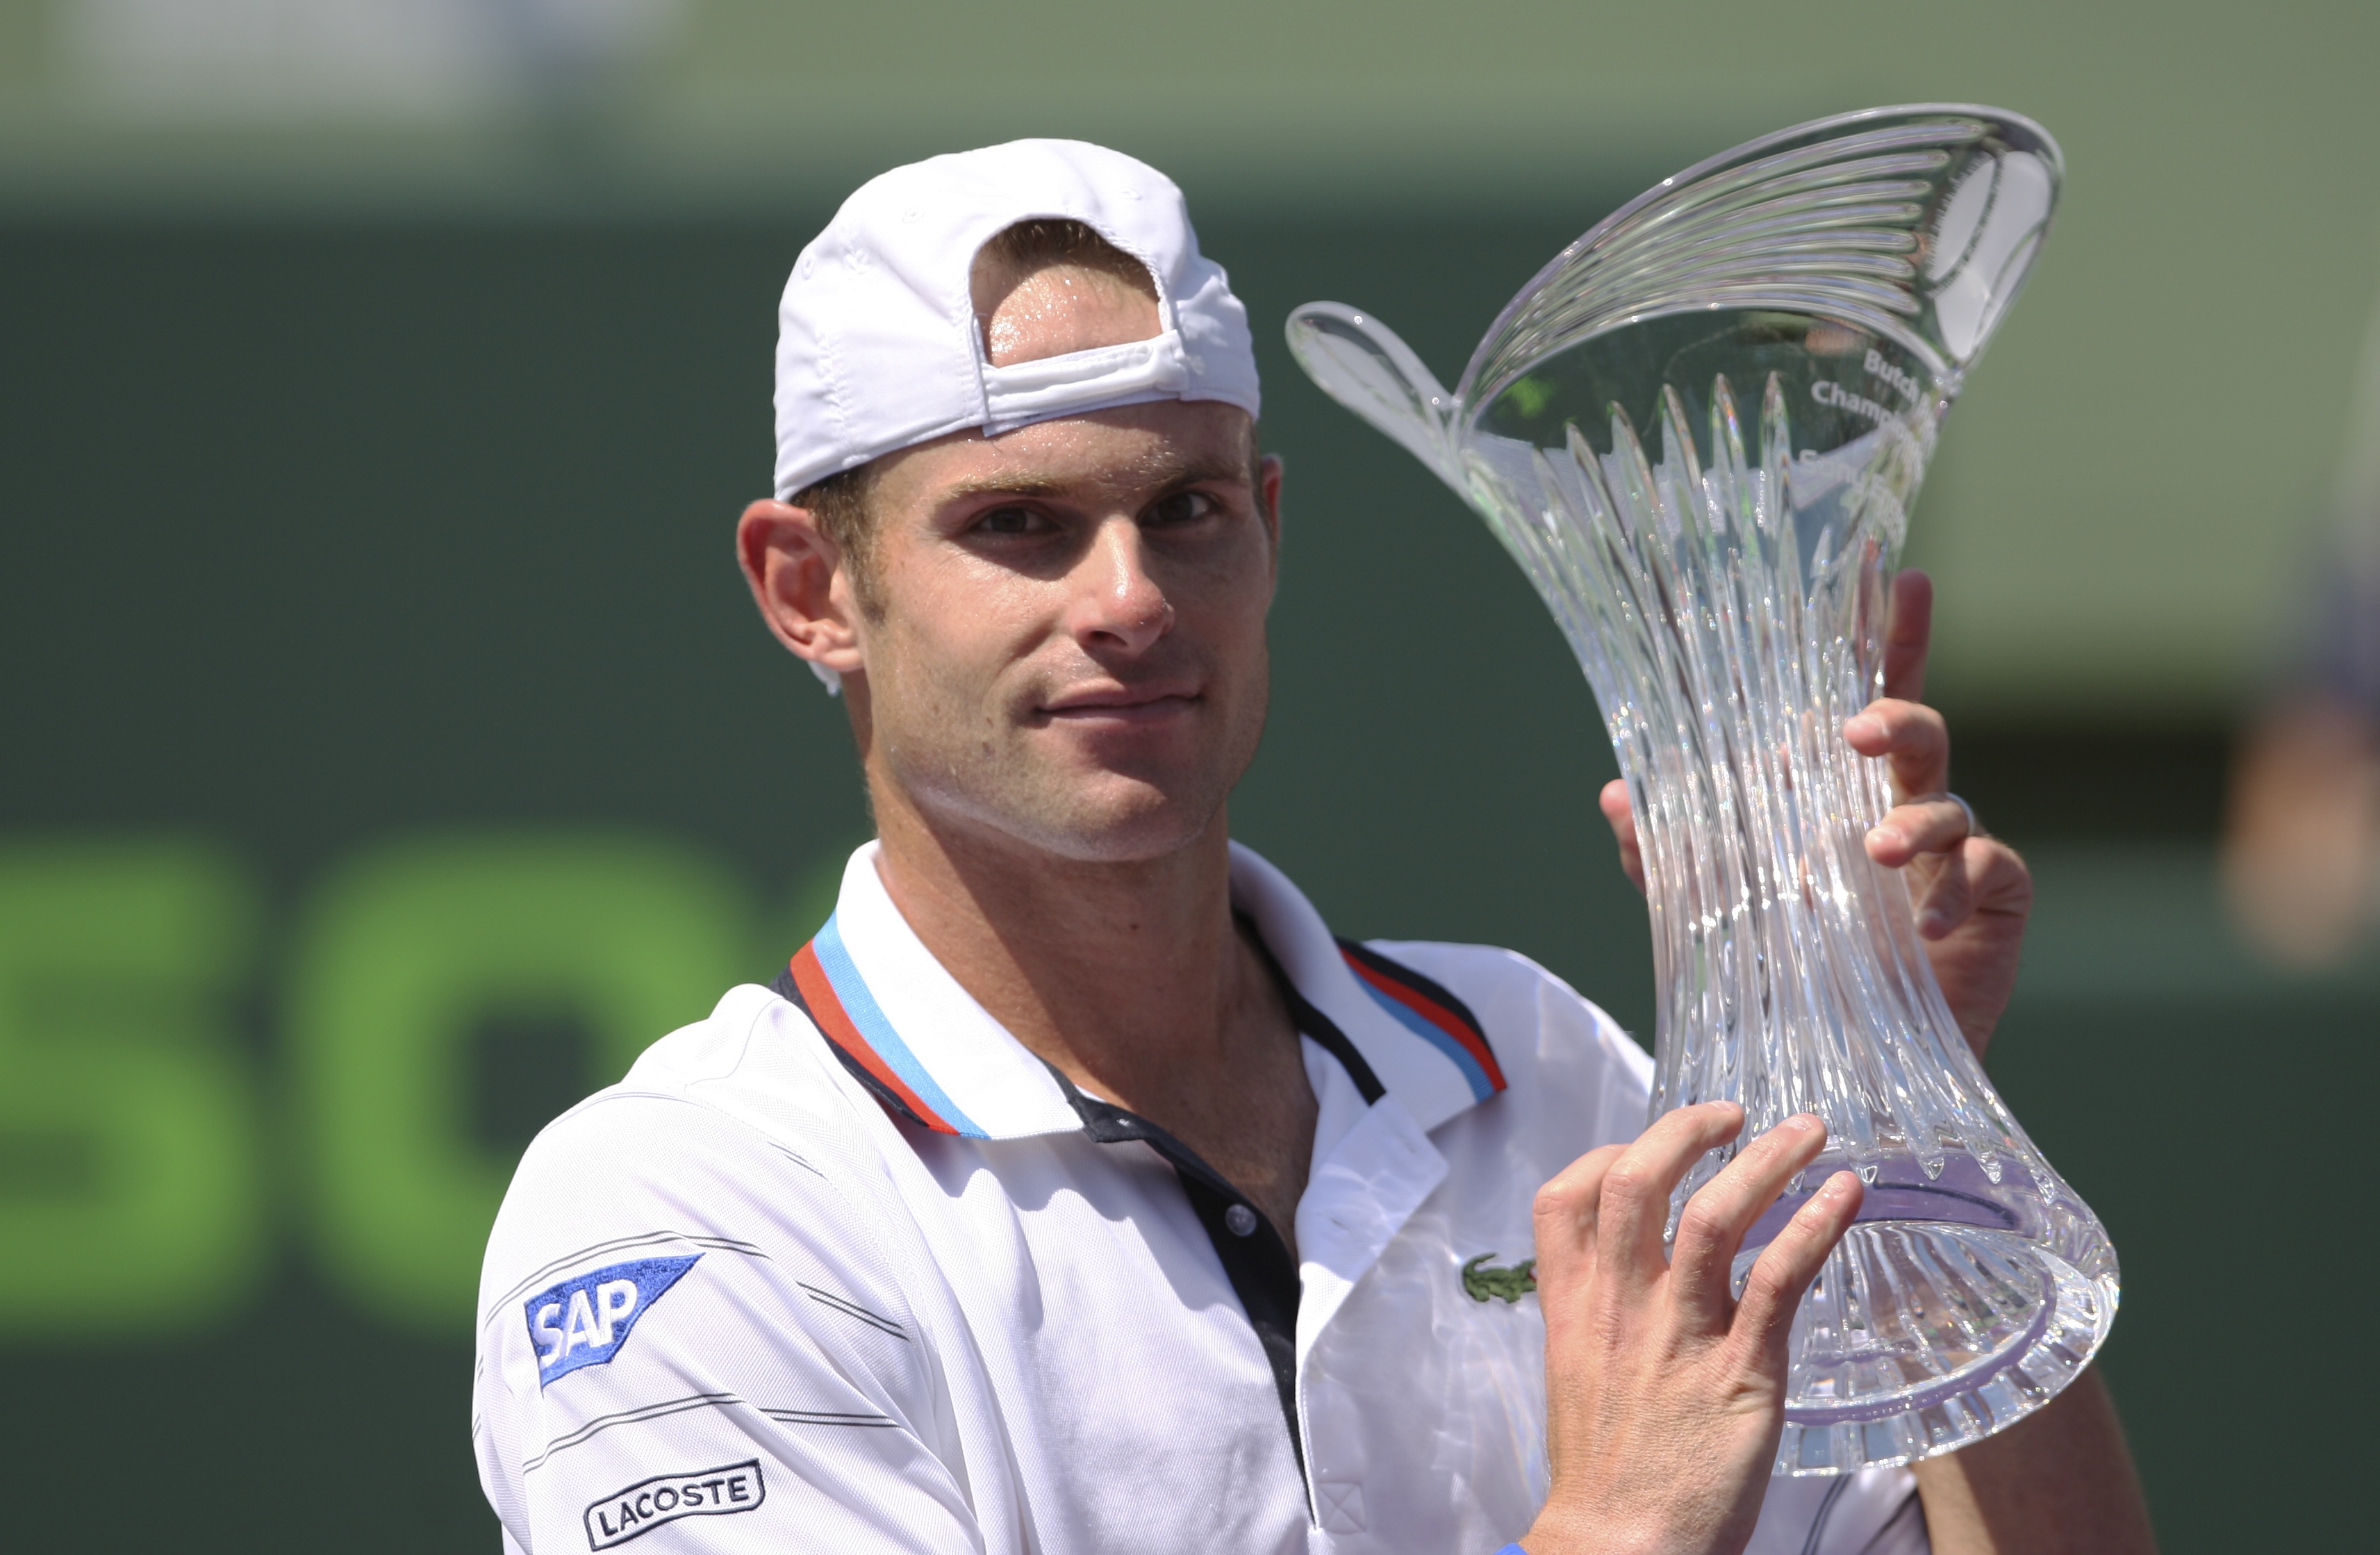 Tennis, Andy Roddick, Miami Mastersturnering, ATP, Tomas Berdych